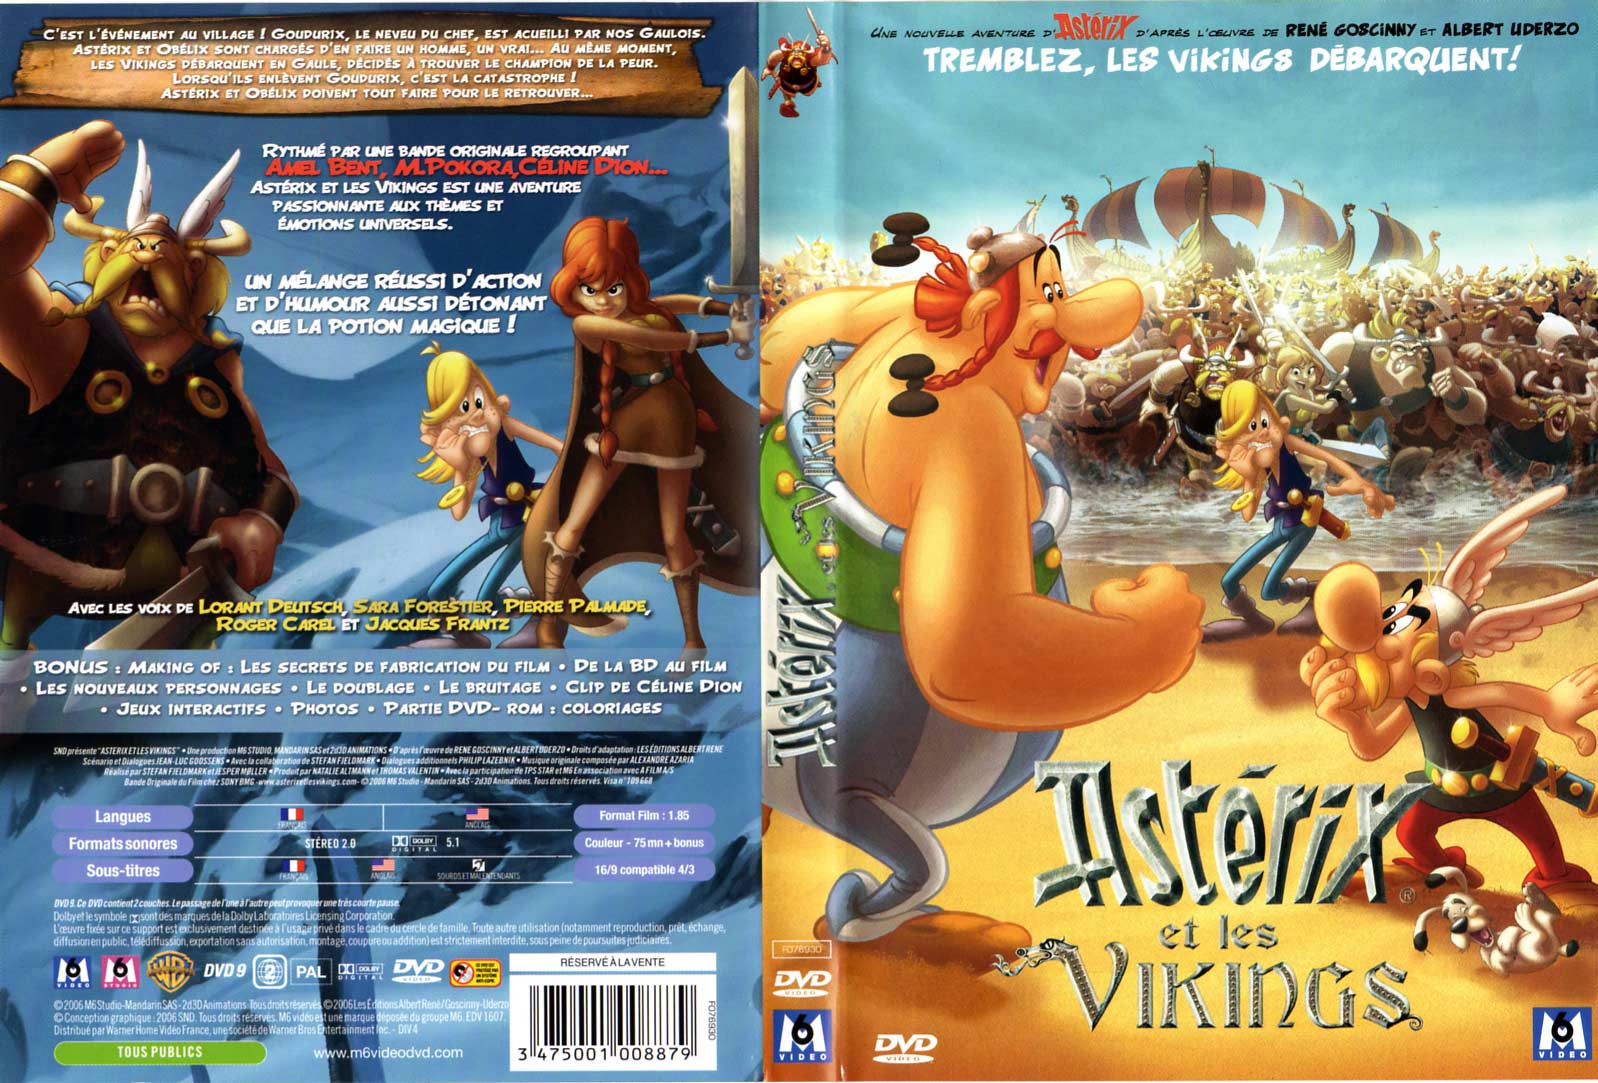 Astérix et les Vikings (2006) jacquette DVD